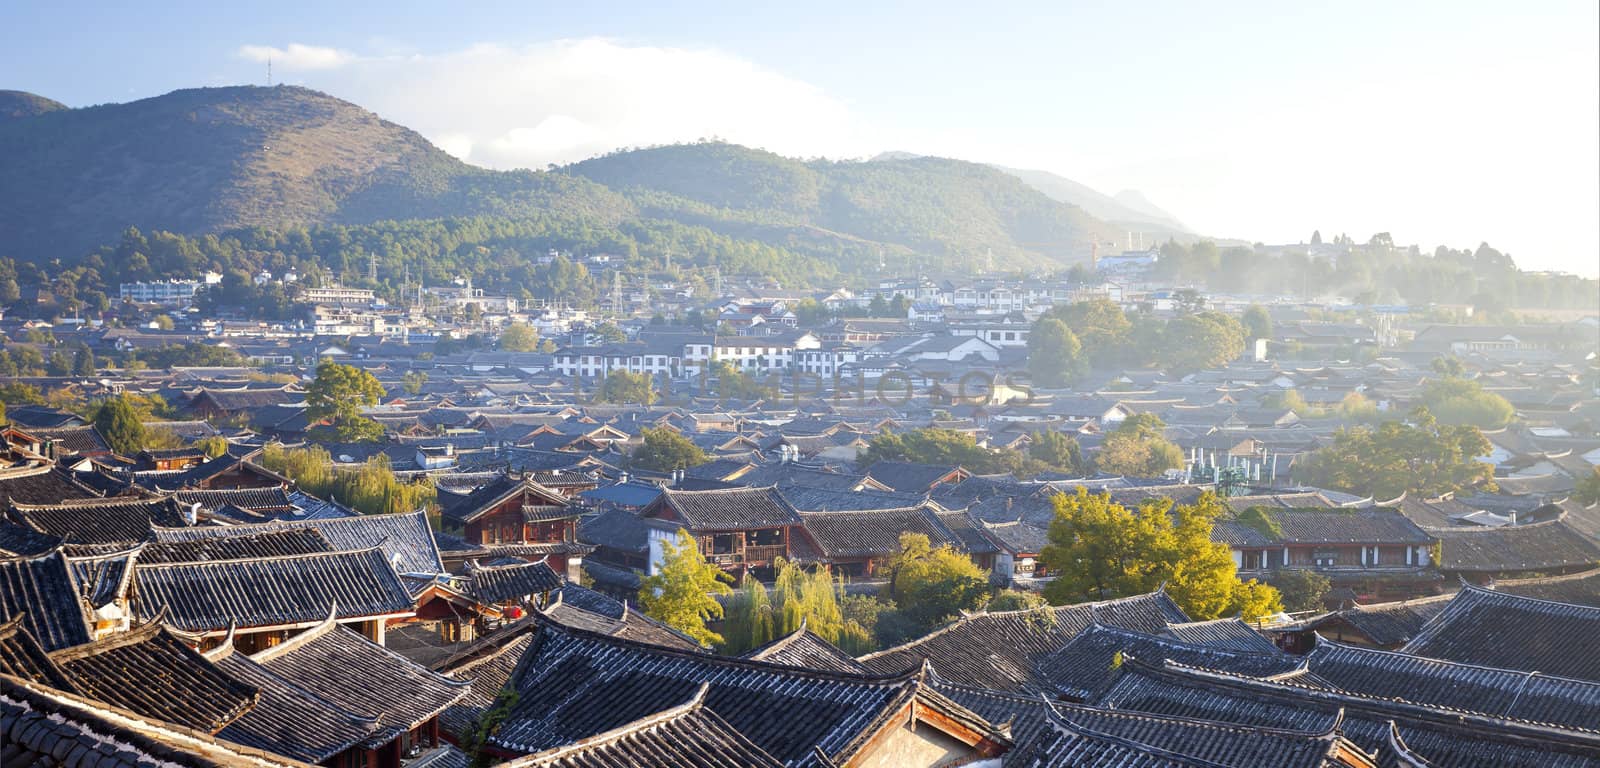 Lijiang old town at morning, China. by kawing921